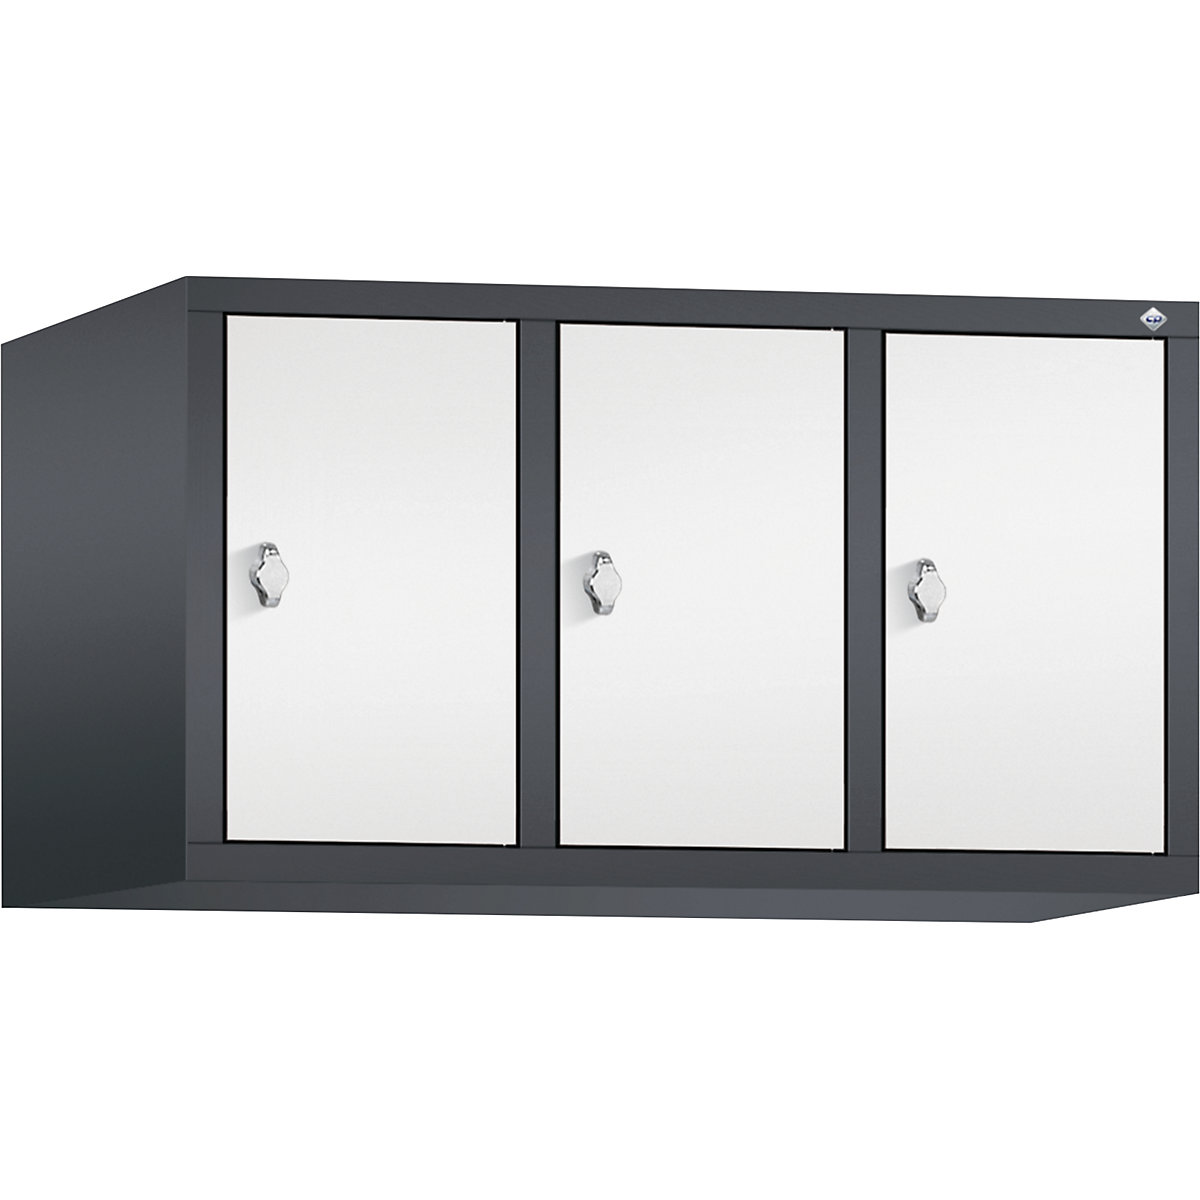 C+P – Altillo CLASSIC, 3 compartimentos, anchura de compartimento 300 mm, gris negruzco / blanco tráfico